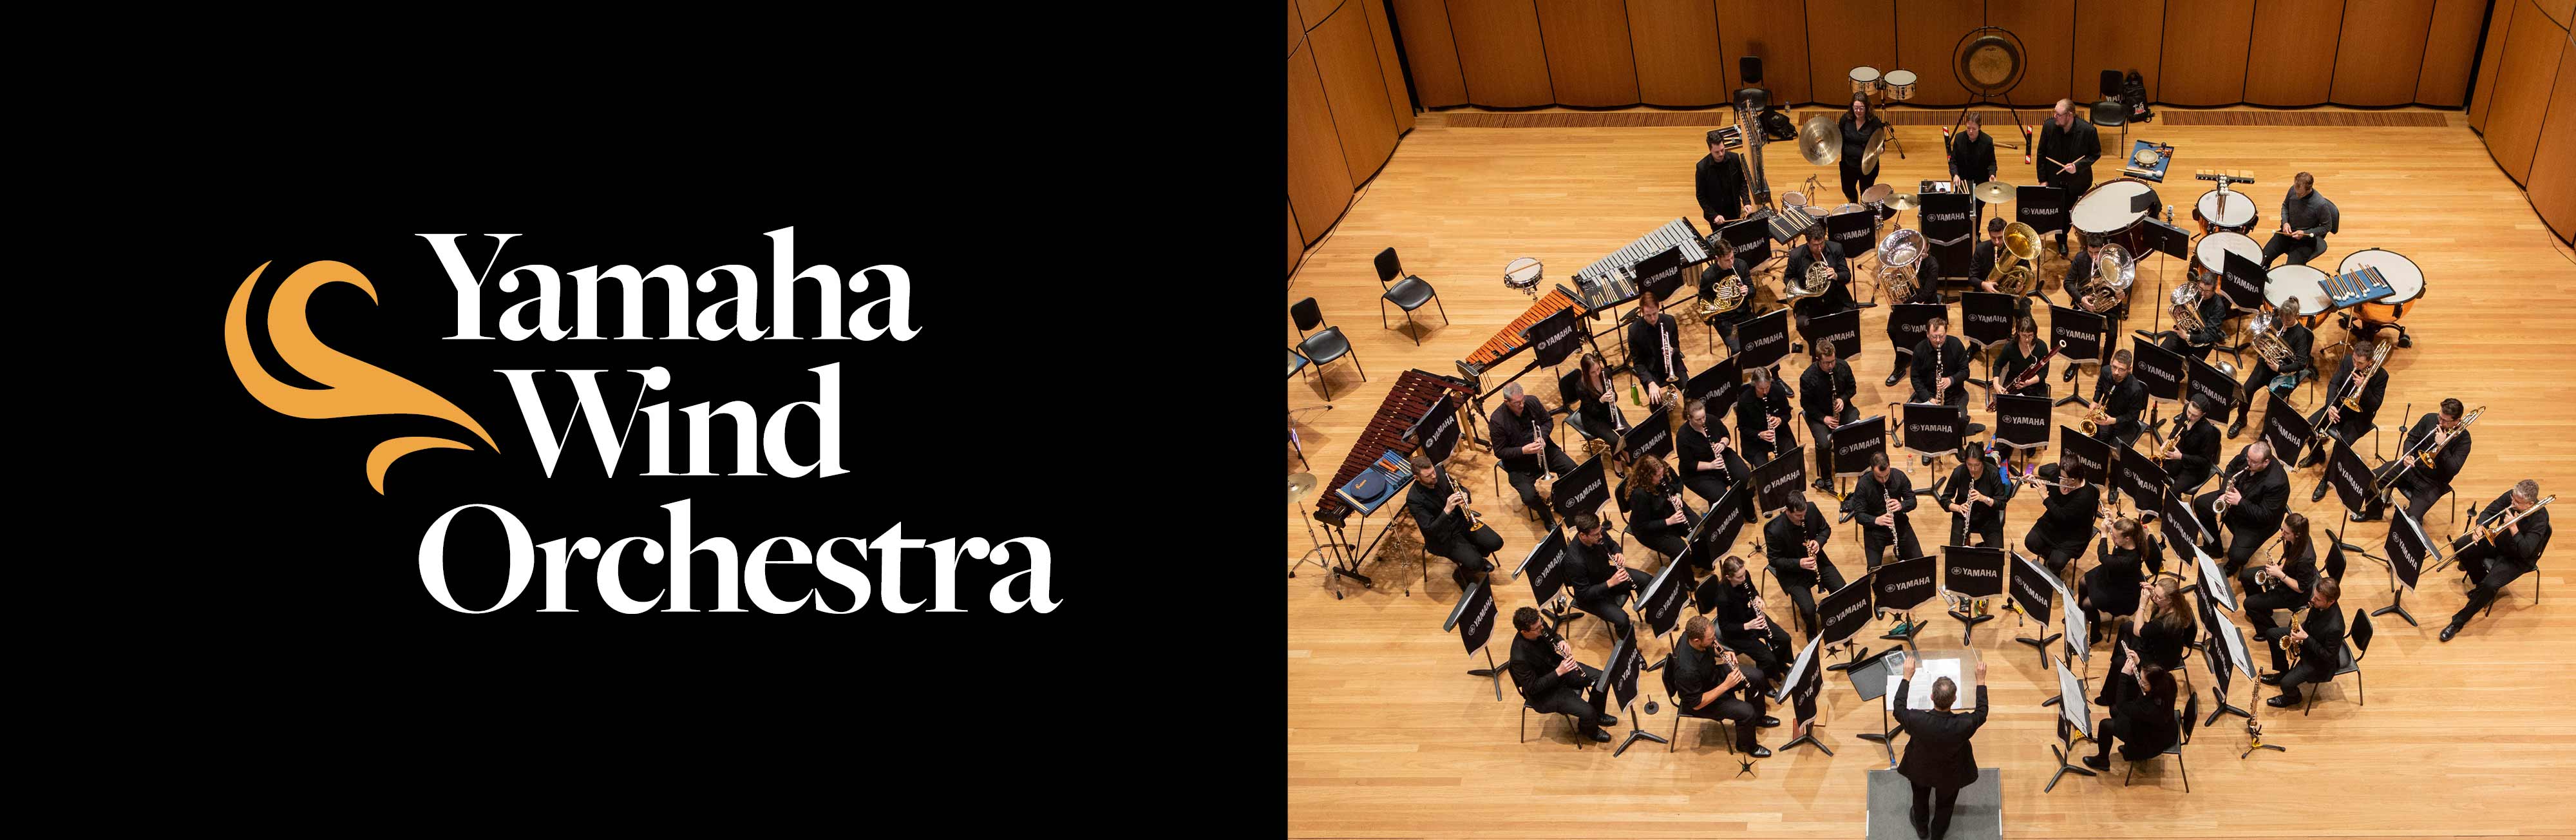 Yamaha Wind Orchestra